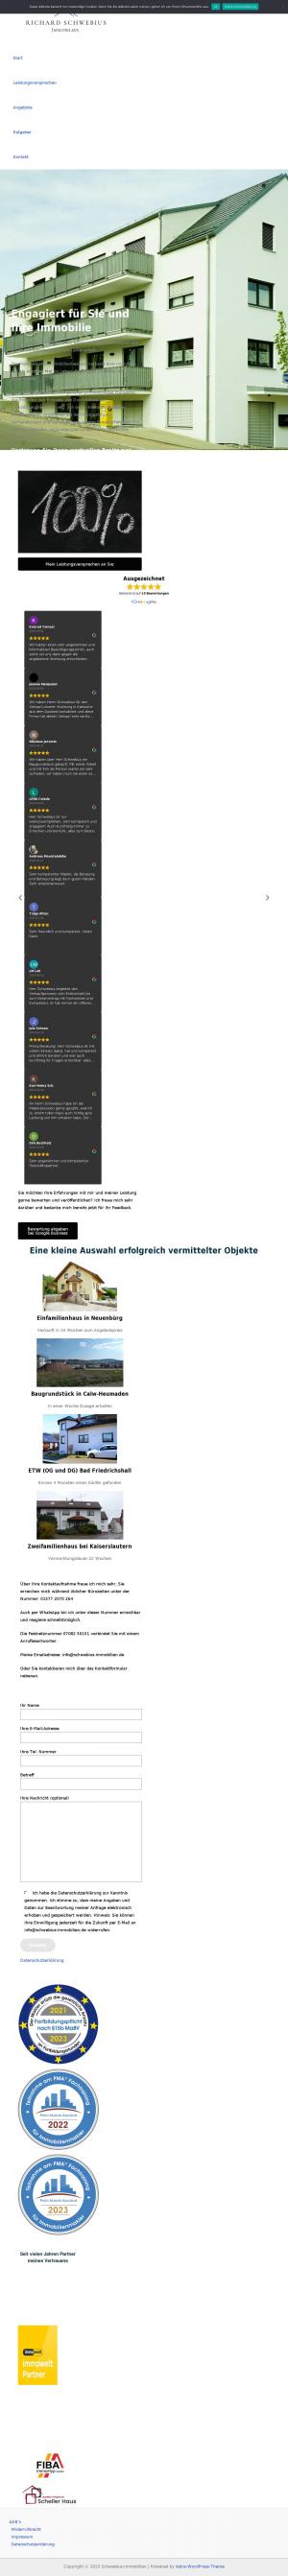 www.schwebius-immobilien.de